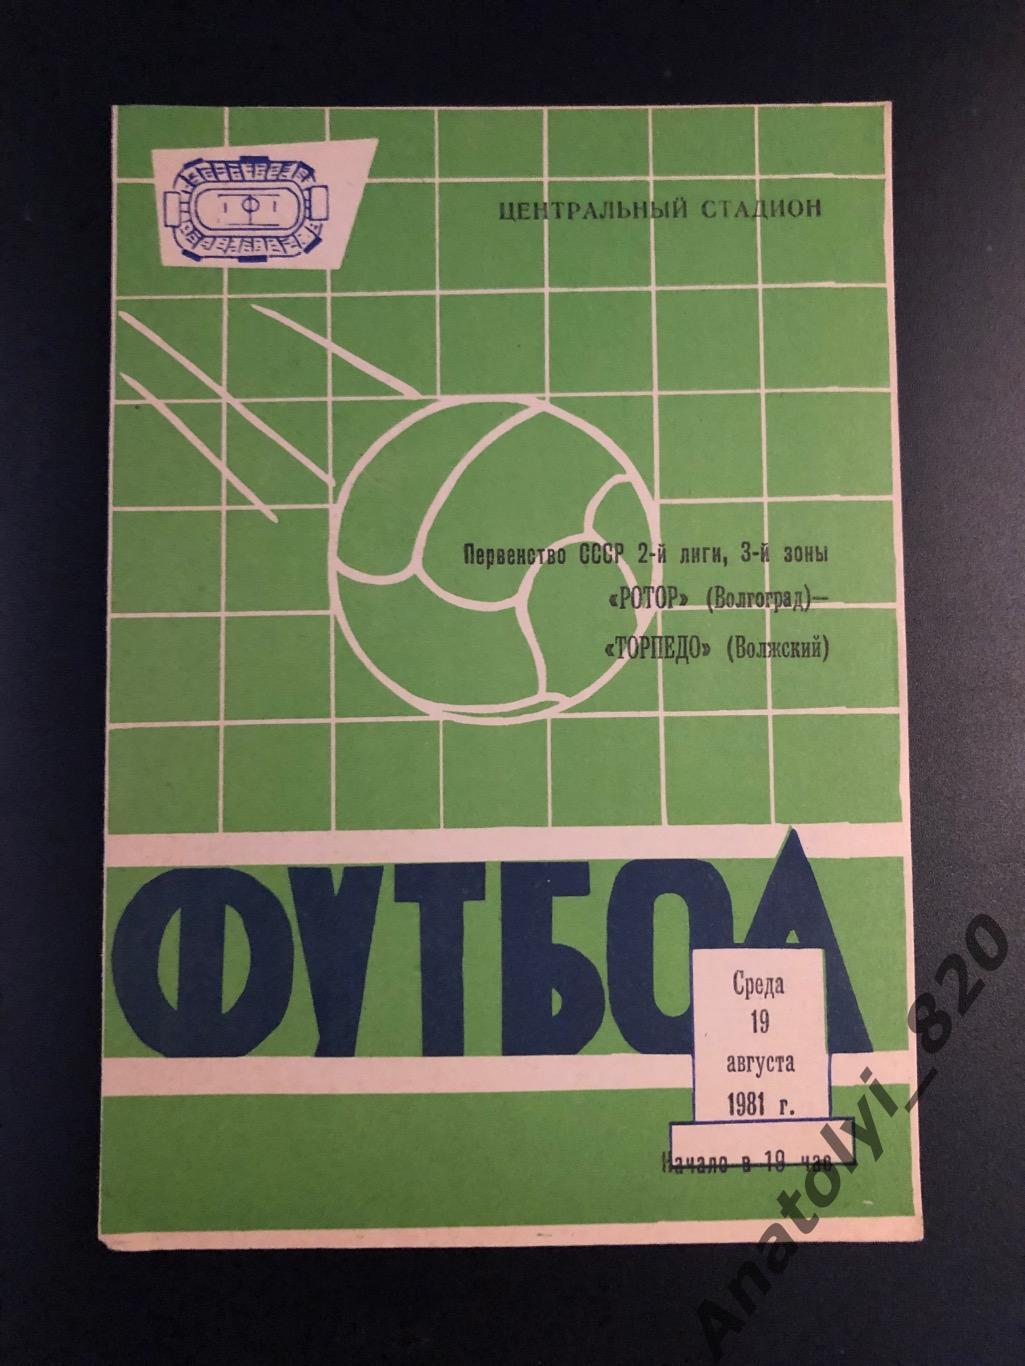 Ротор Волгоград - Торпедо Волжский, 19.08.1981